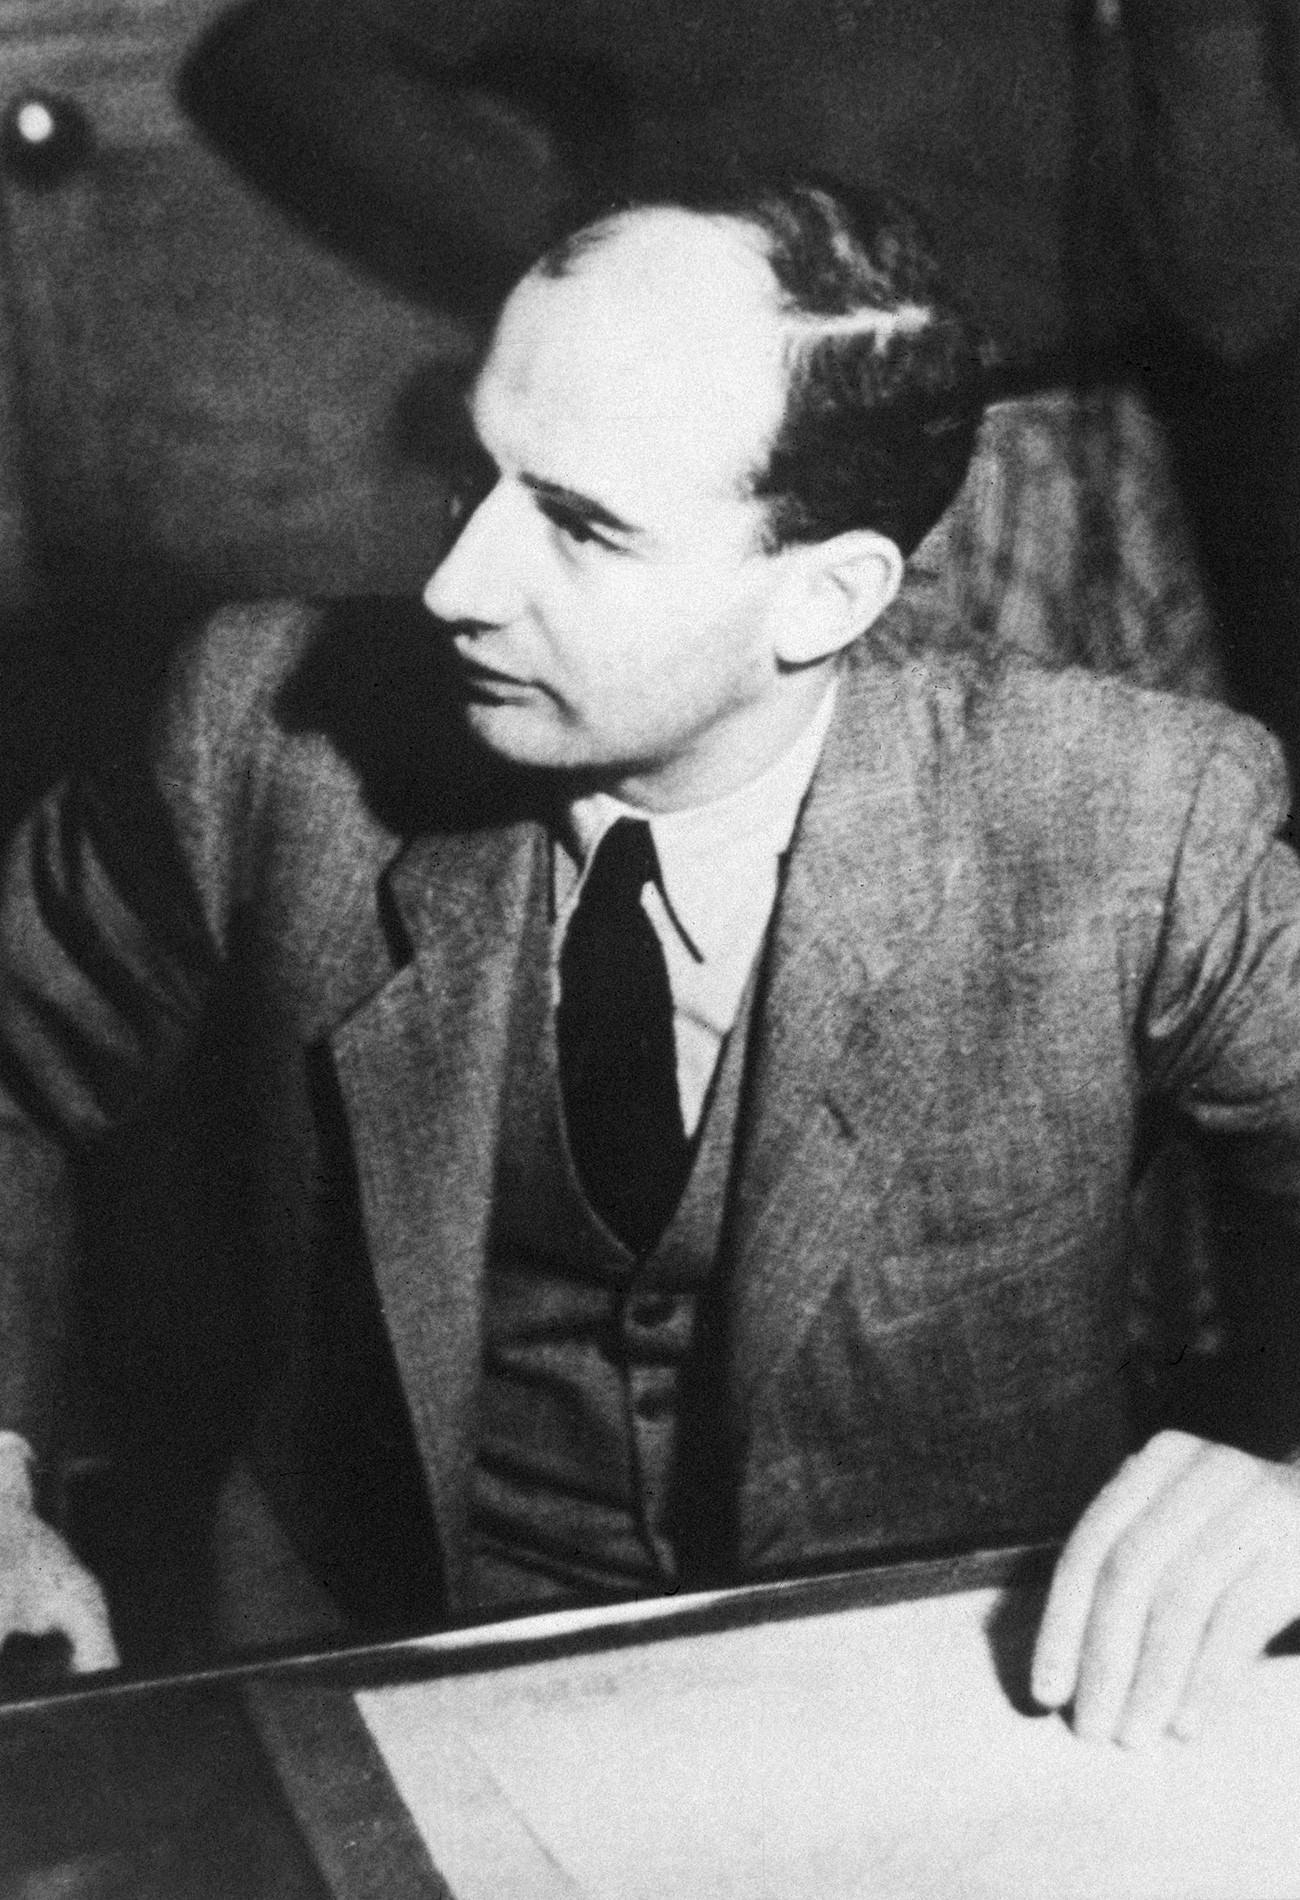 Raoul Wallenberg. 